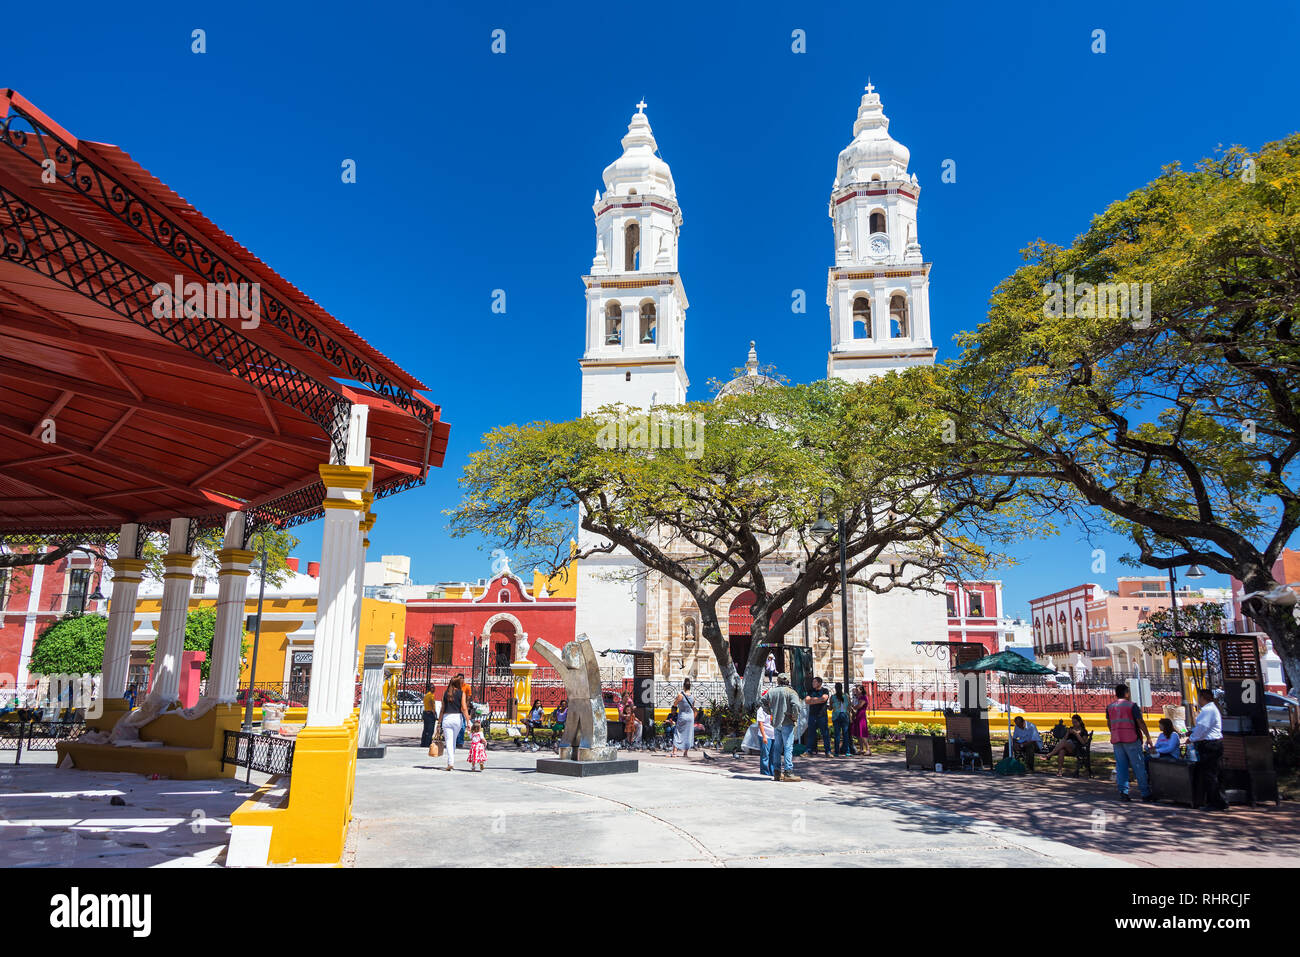 CAMPECHE, MEXIQUE - le 23 février : Vue de la plaza et la cathédrale dans le centre de Campeche, Mexique le 23 février 2017 Banque D'Images